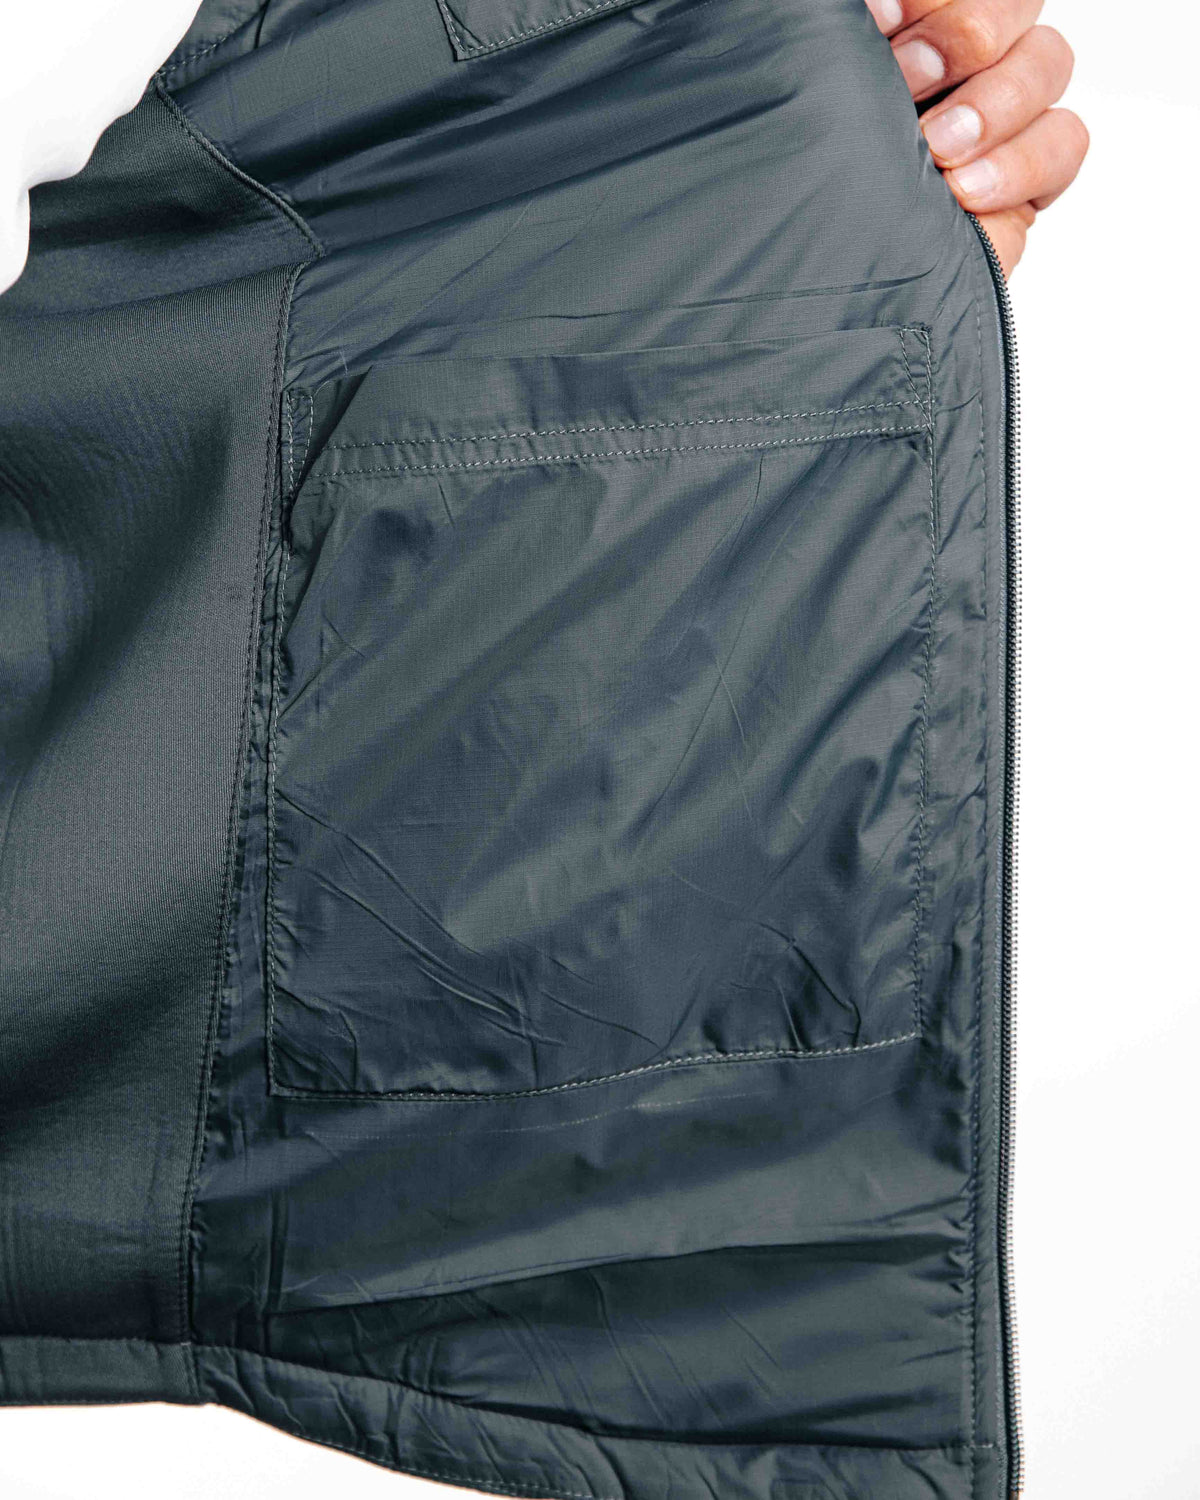 The Primo Golf Dark Gray Vest inner pocket